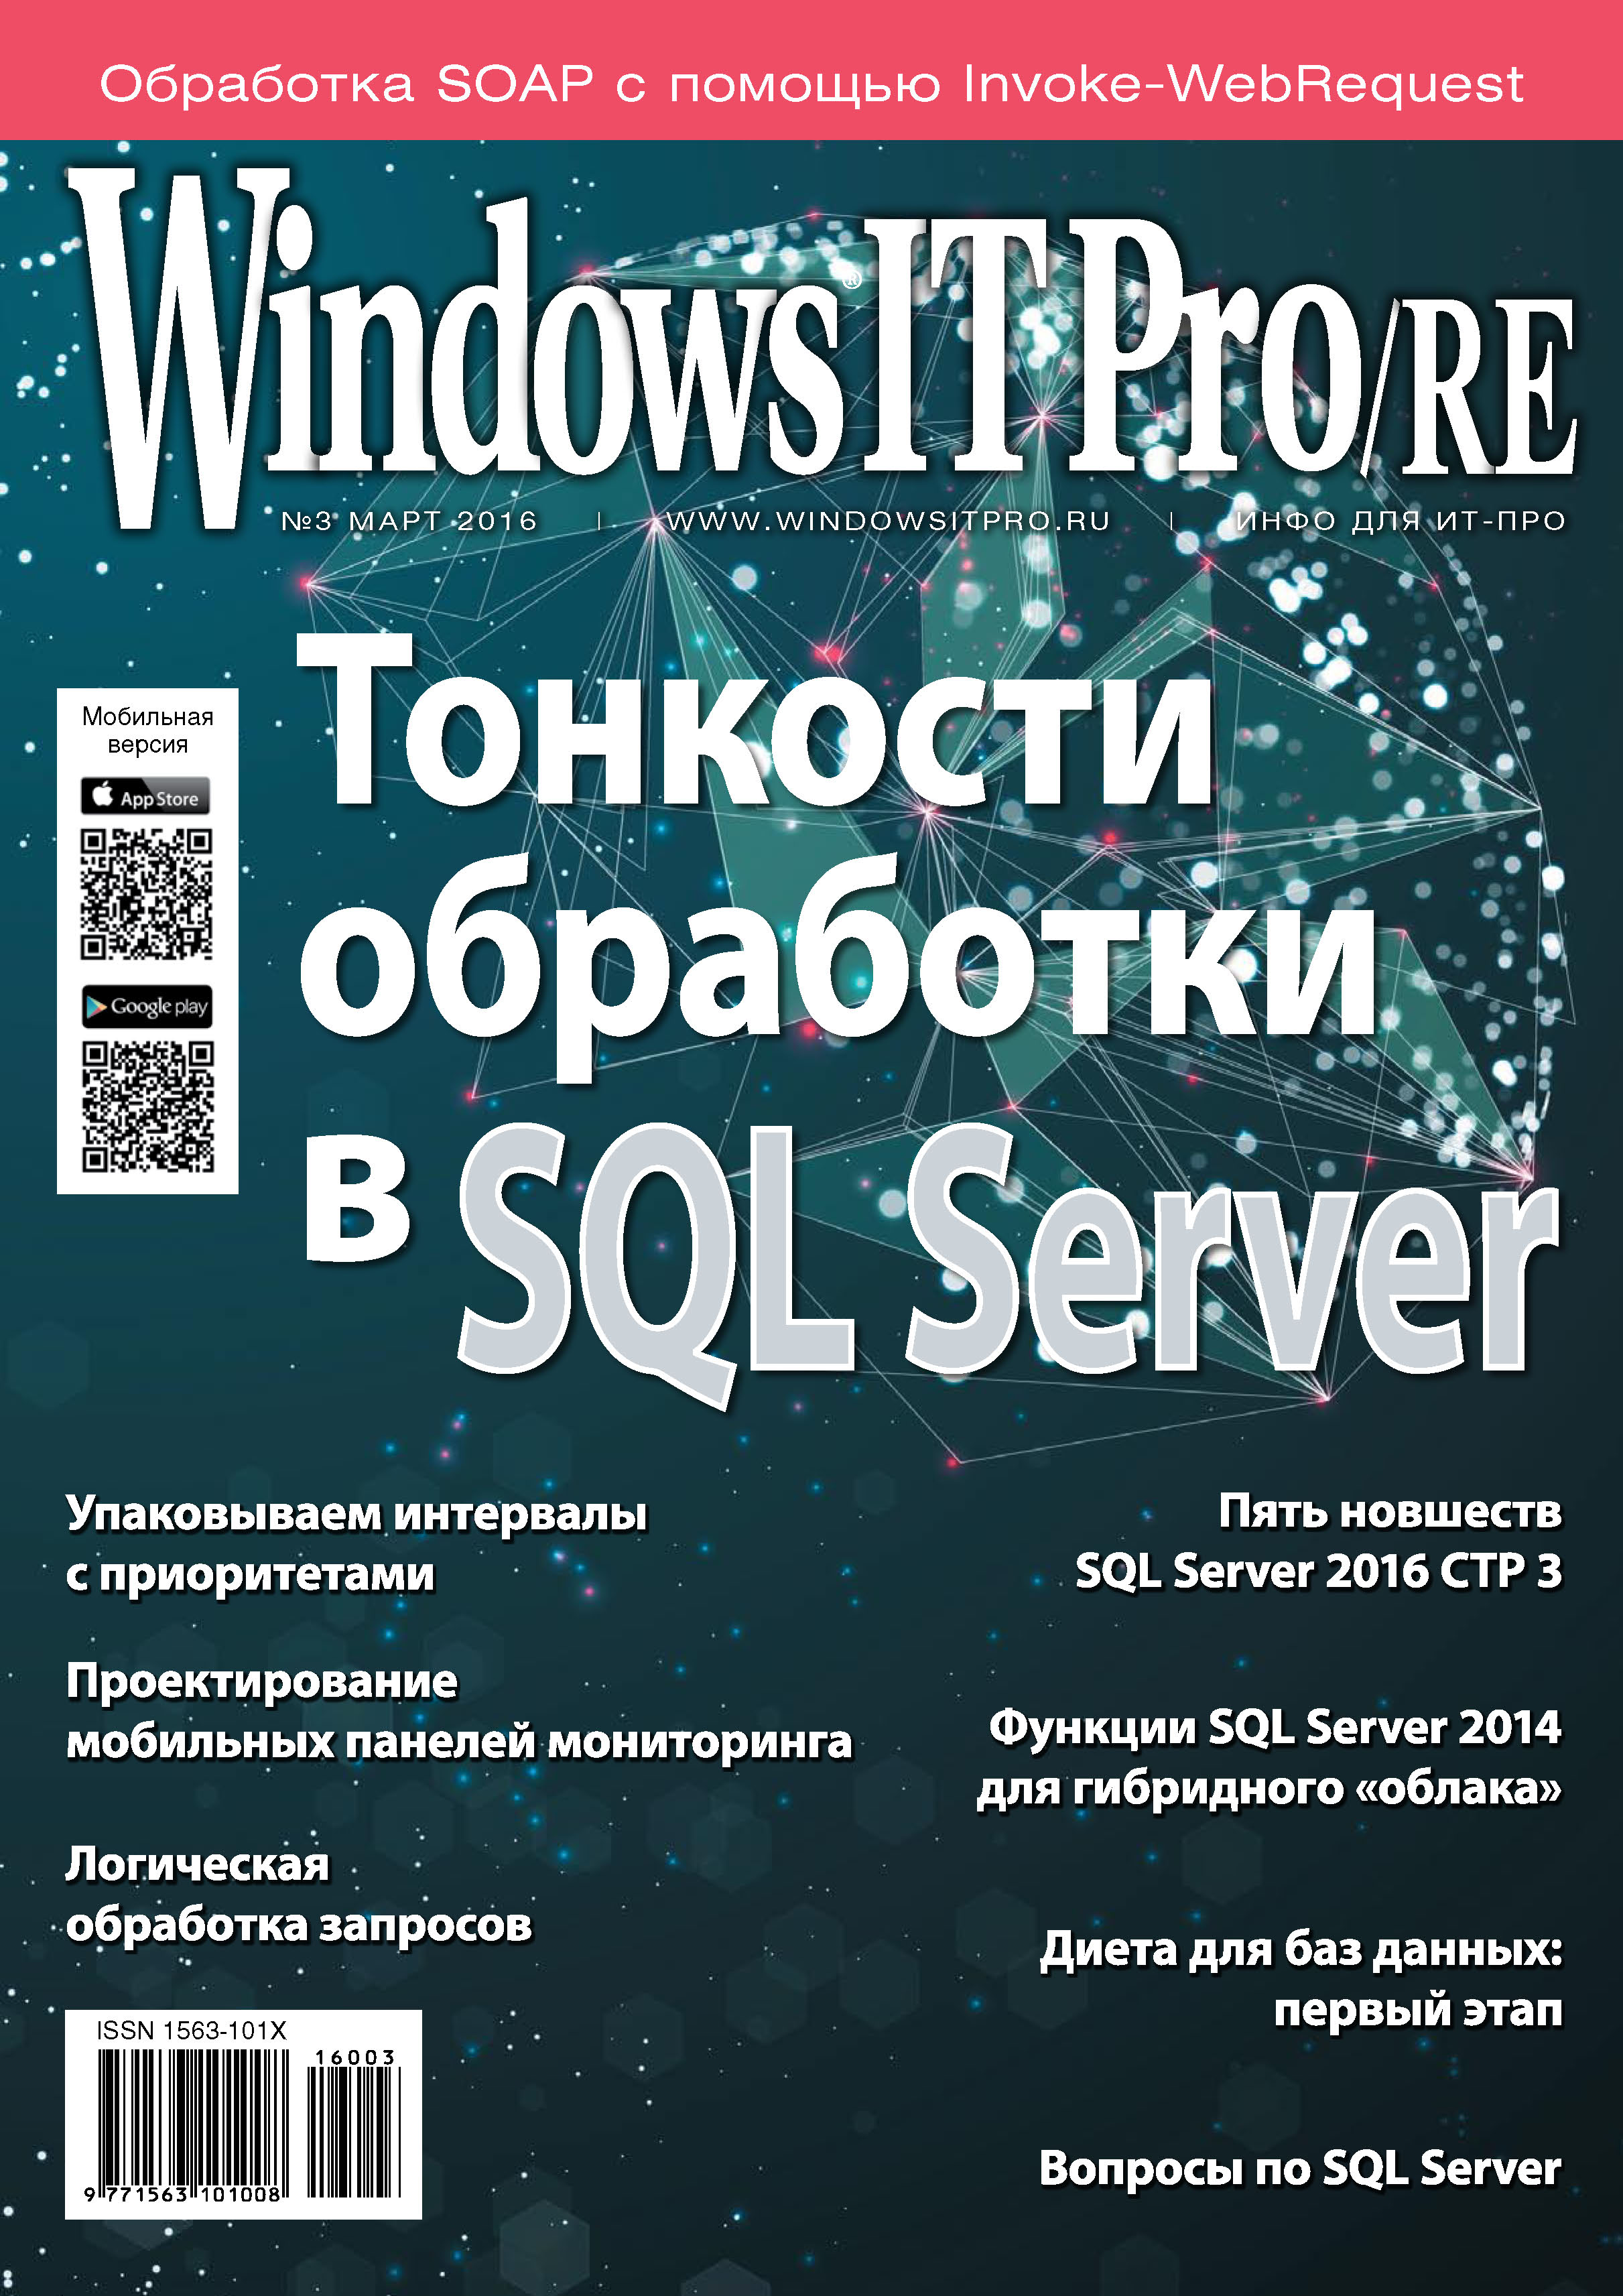 Windows IT Pro/RE№03/2016